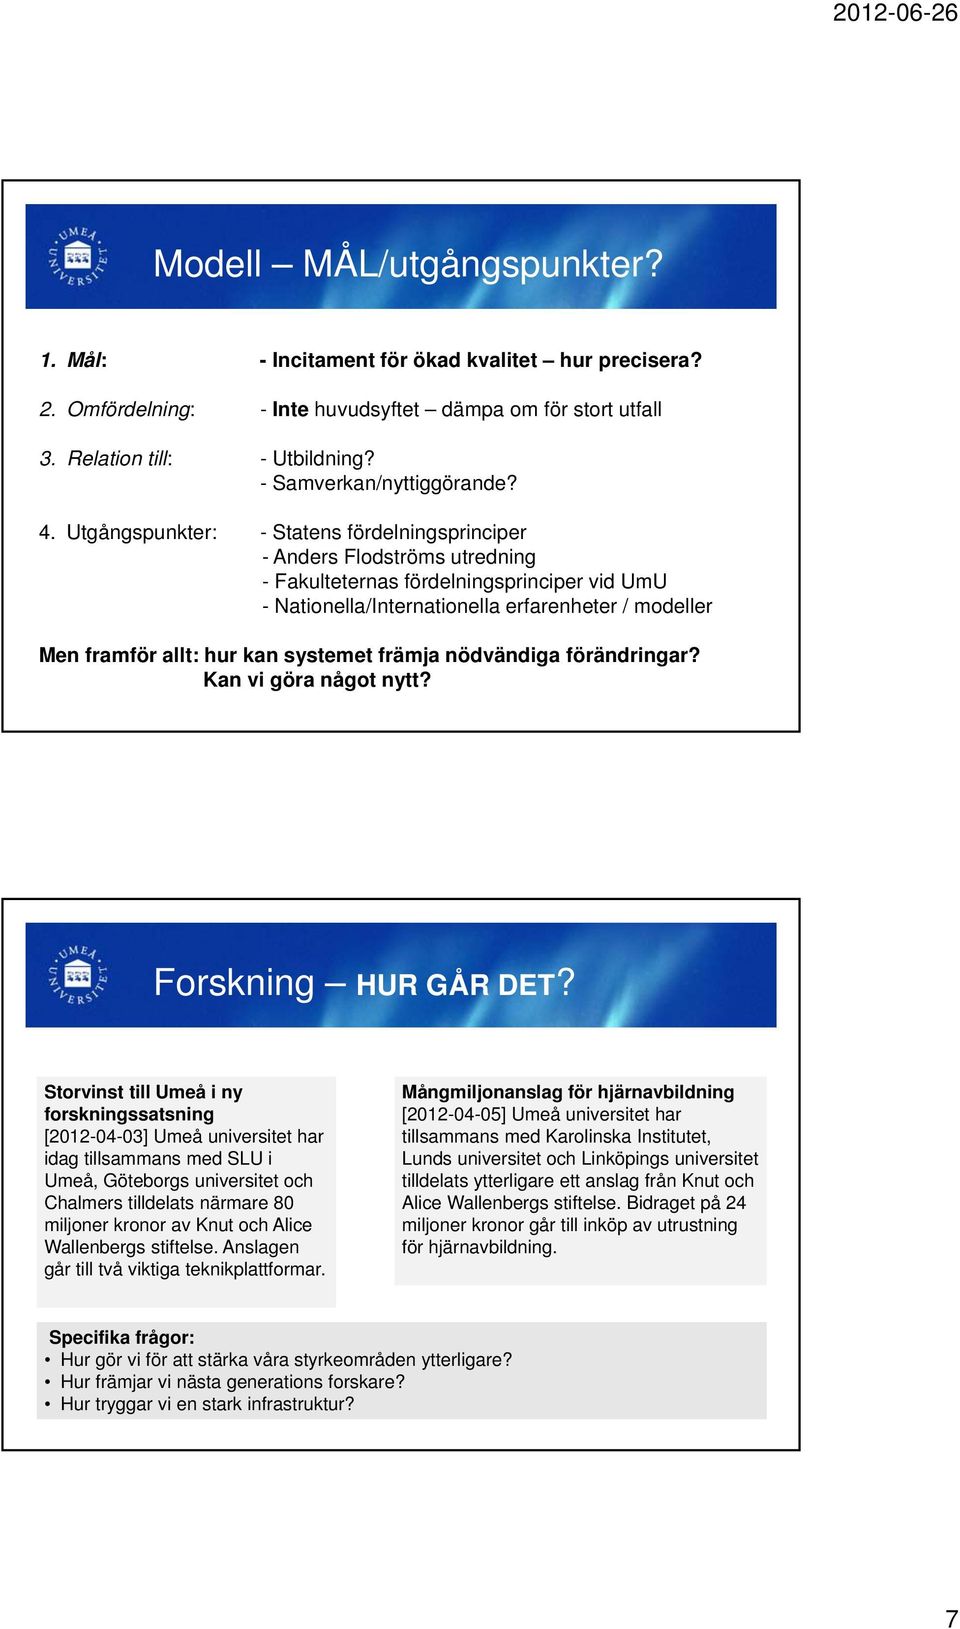 Utgångspunkter: - Statens fördelningsprinciper - Anders Flodströms utredning - Fakulteternas fördelningsprinciper vid UmU - Nationella/Internationella erfarenheter / modeller Men framför allt: hur